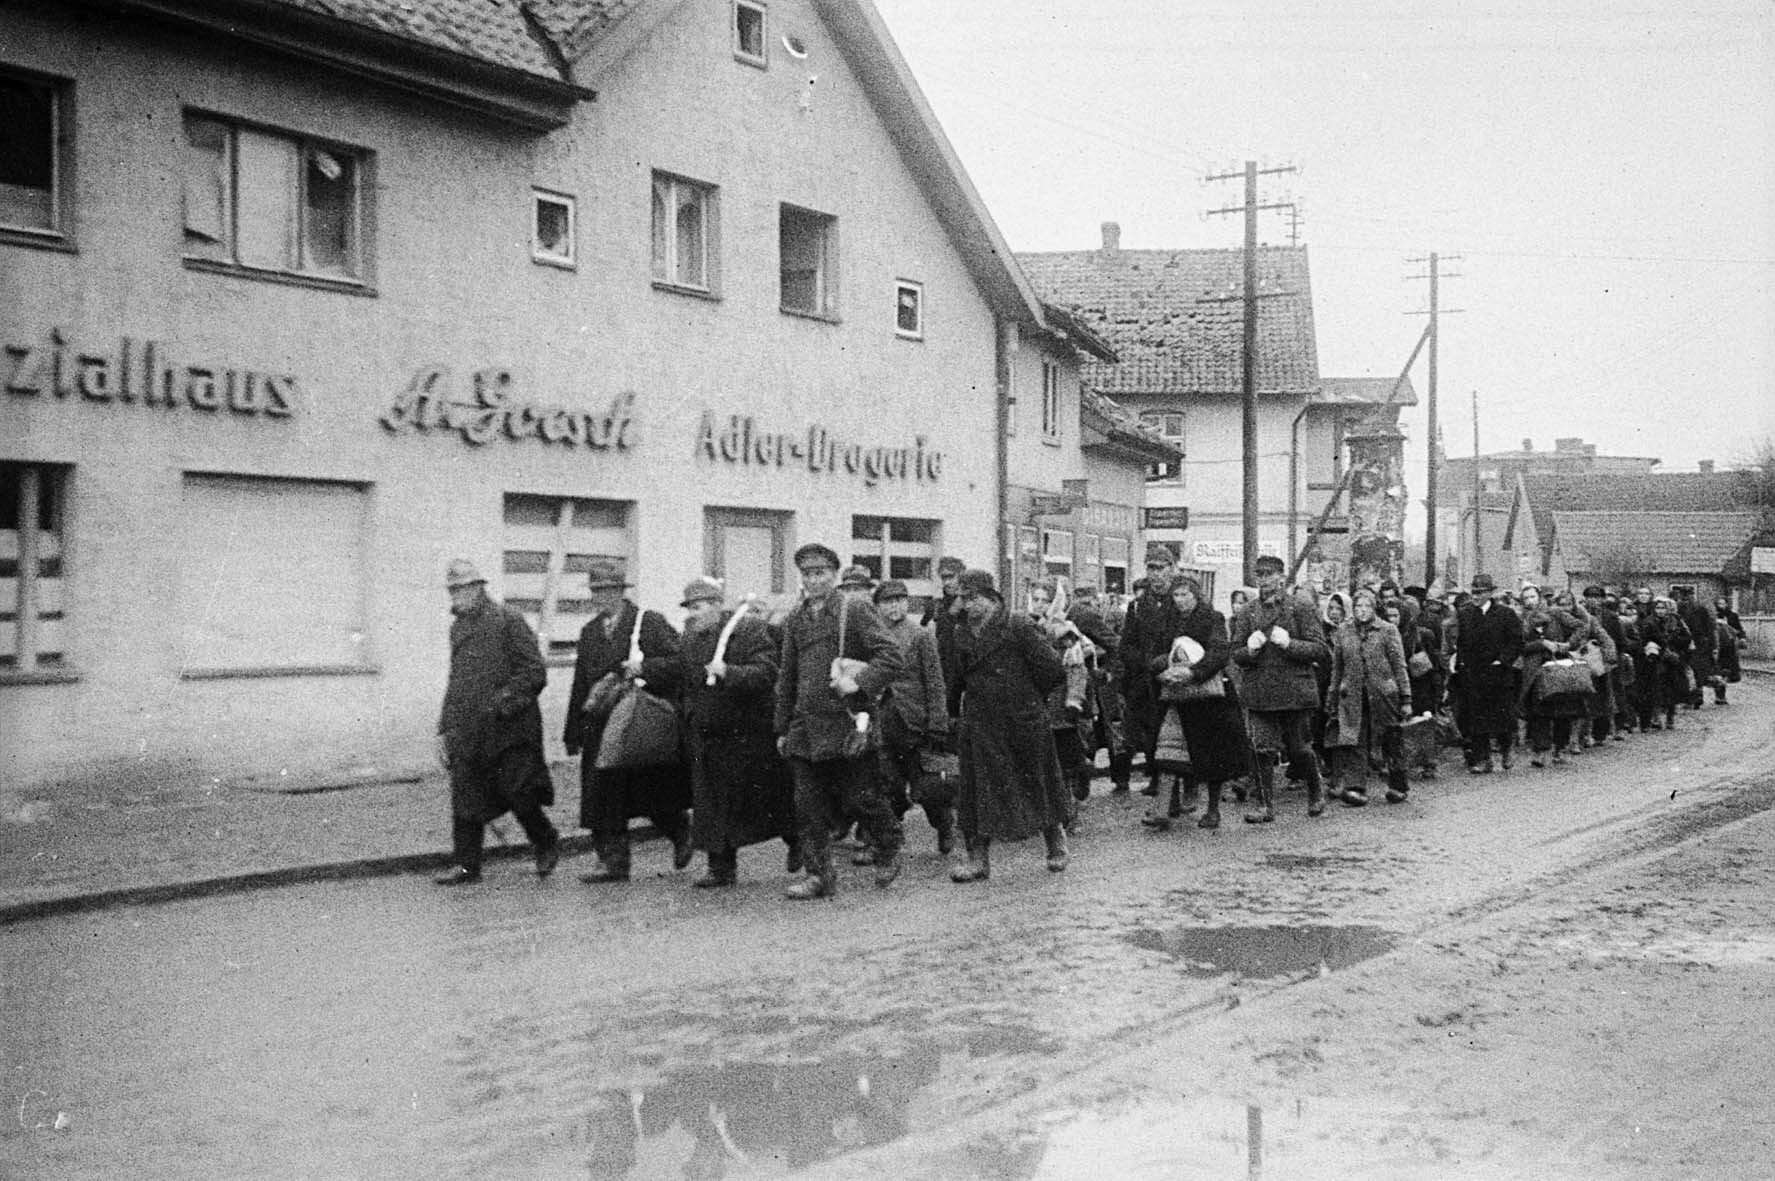 Kolonne von Zivilisten in einer litauischen Kleinstadt, Oktober 1944 (Museum Berlin-Karlshorst RR-P)